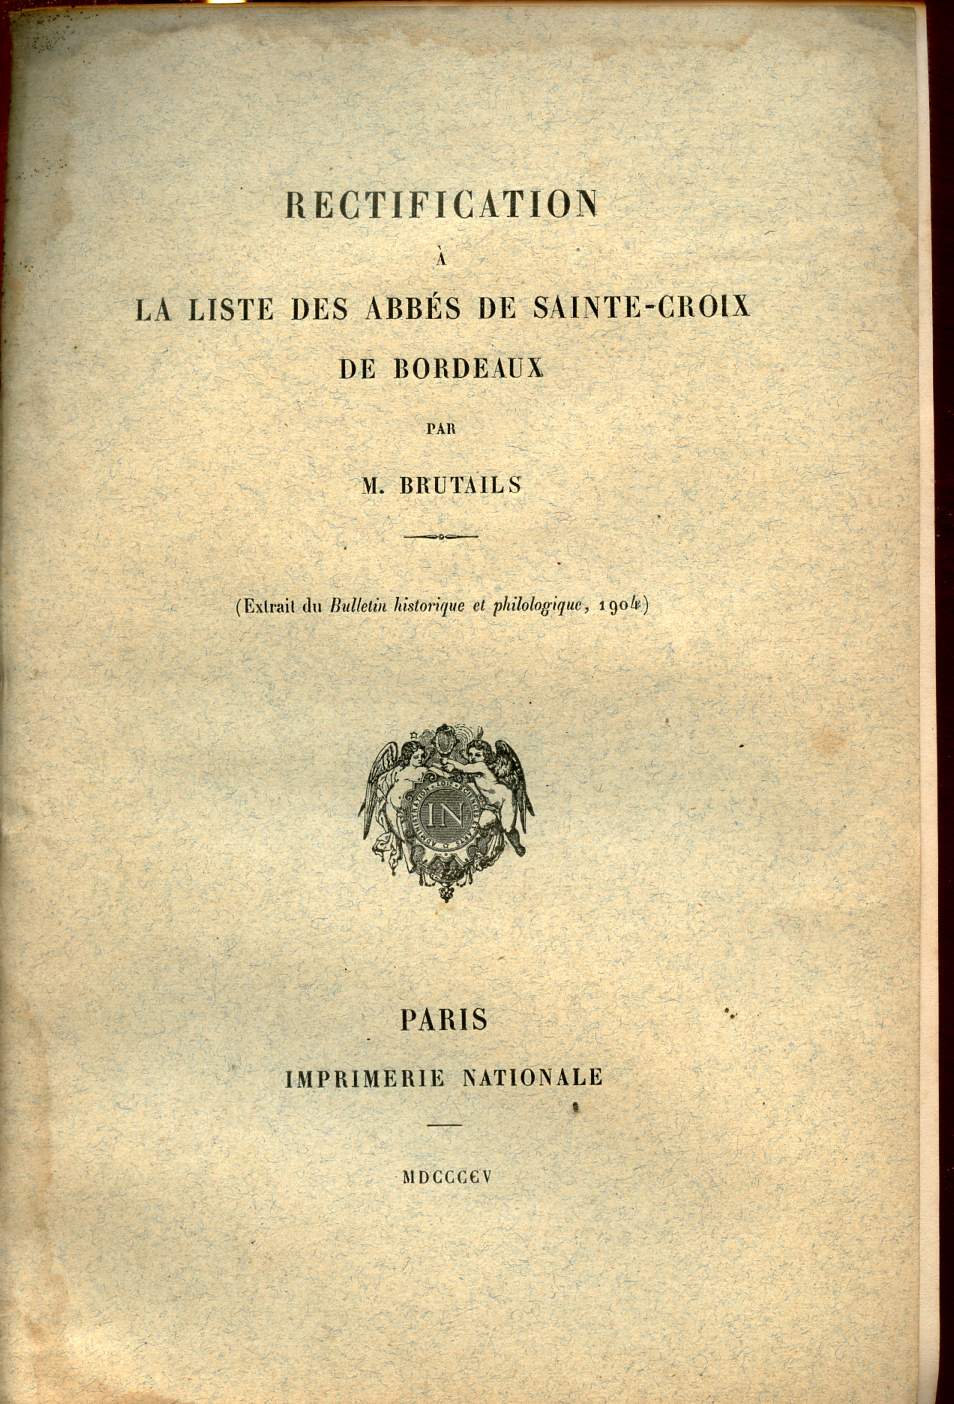 Rectification  la liste des Abbs de Sainte-Croix de Bordeaux - Extrait du bulletin historique et philologique 1904.